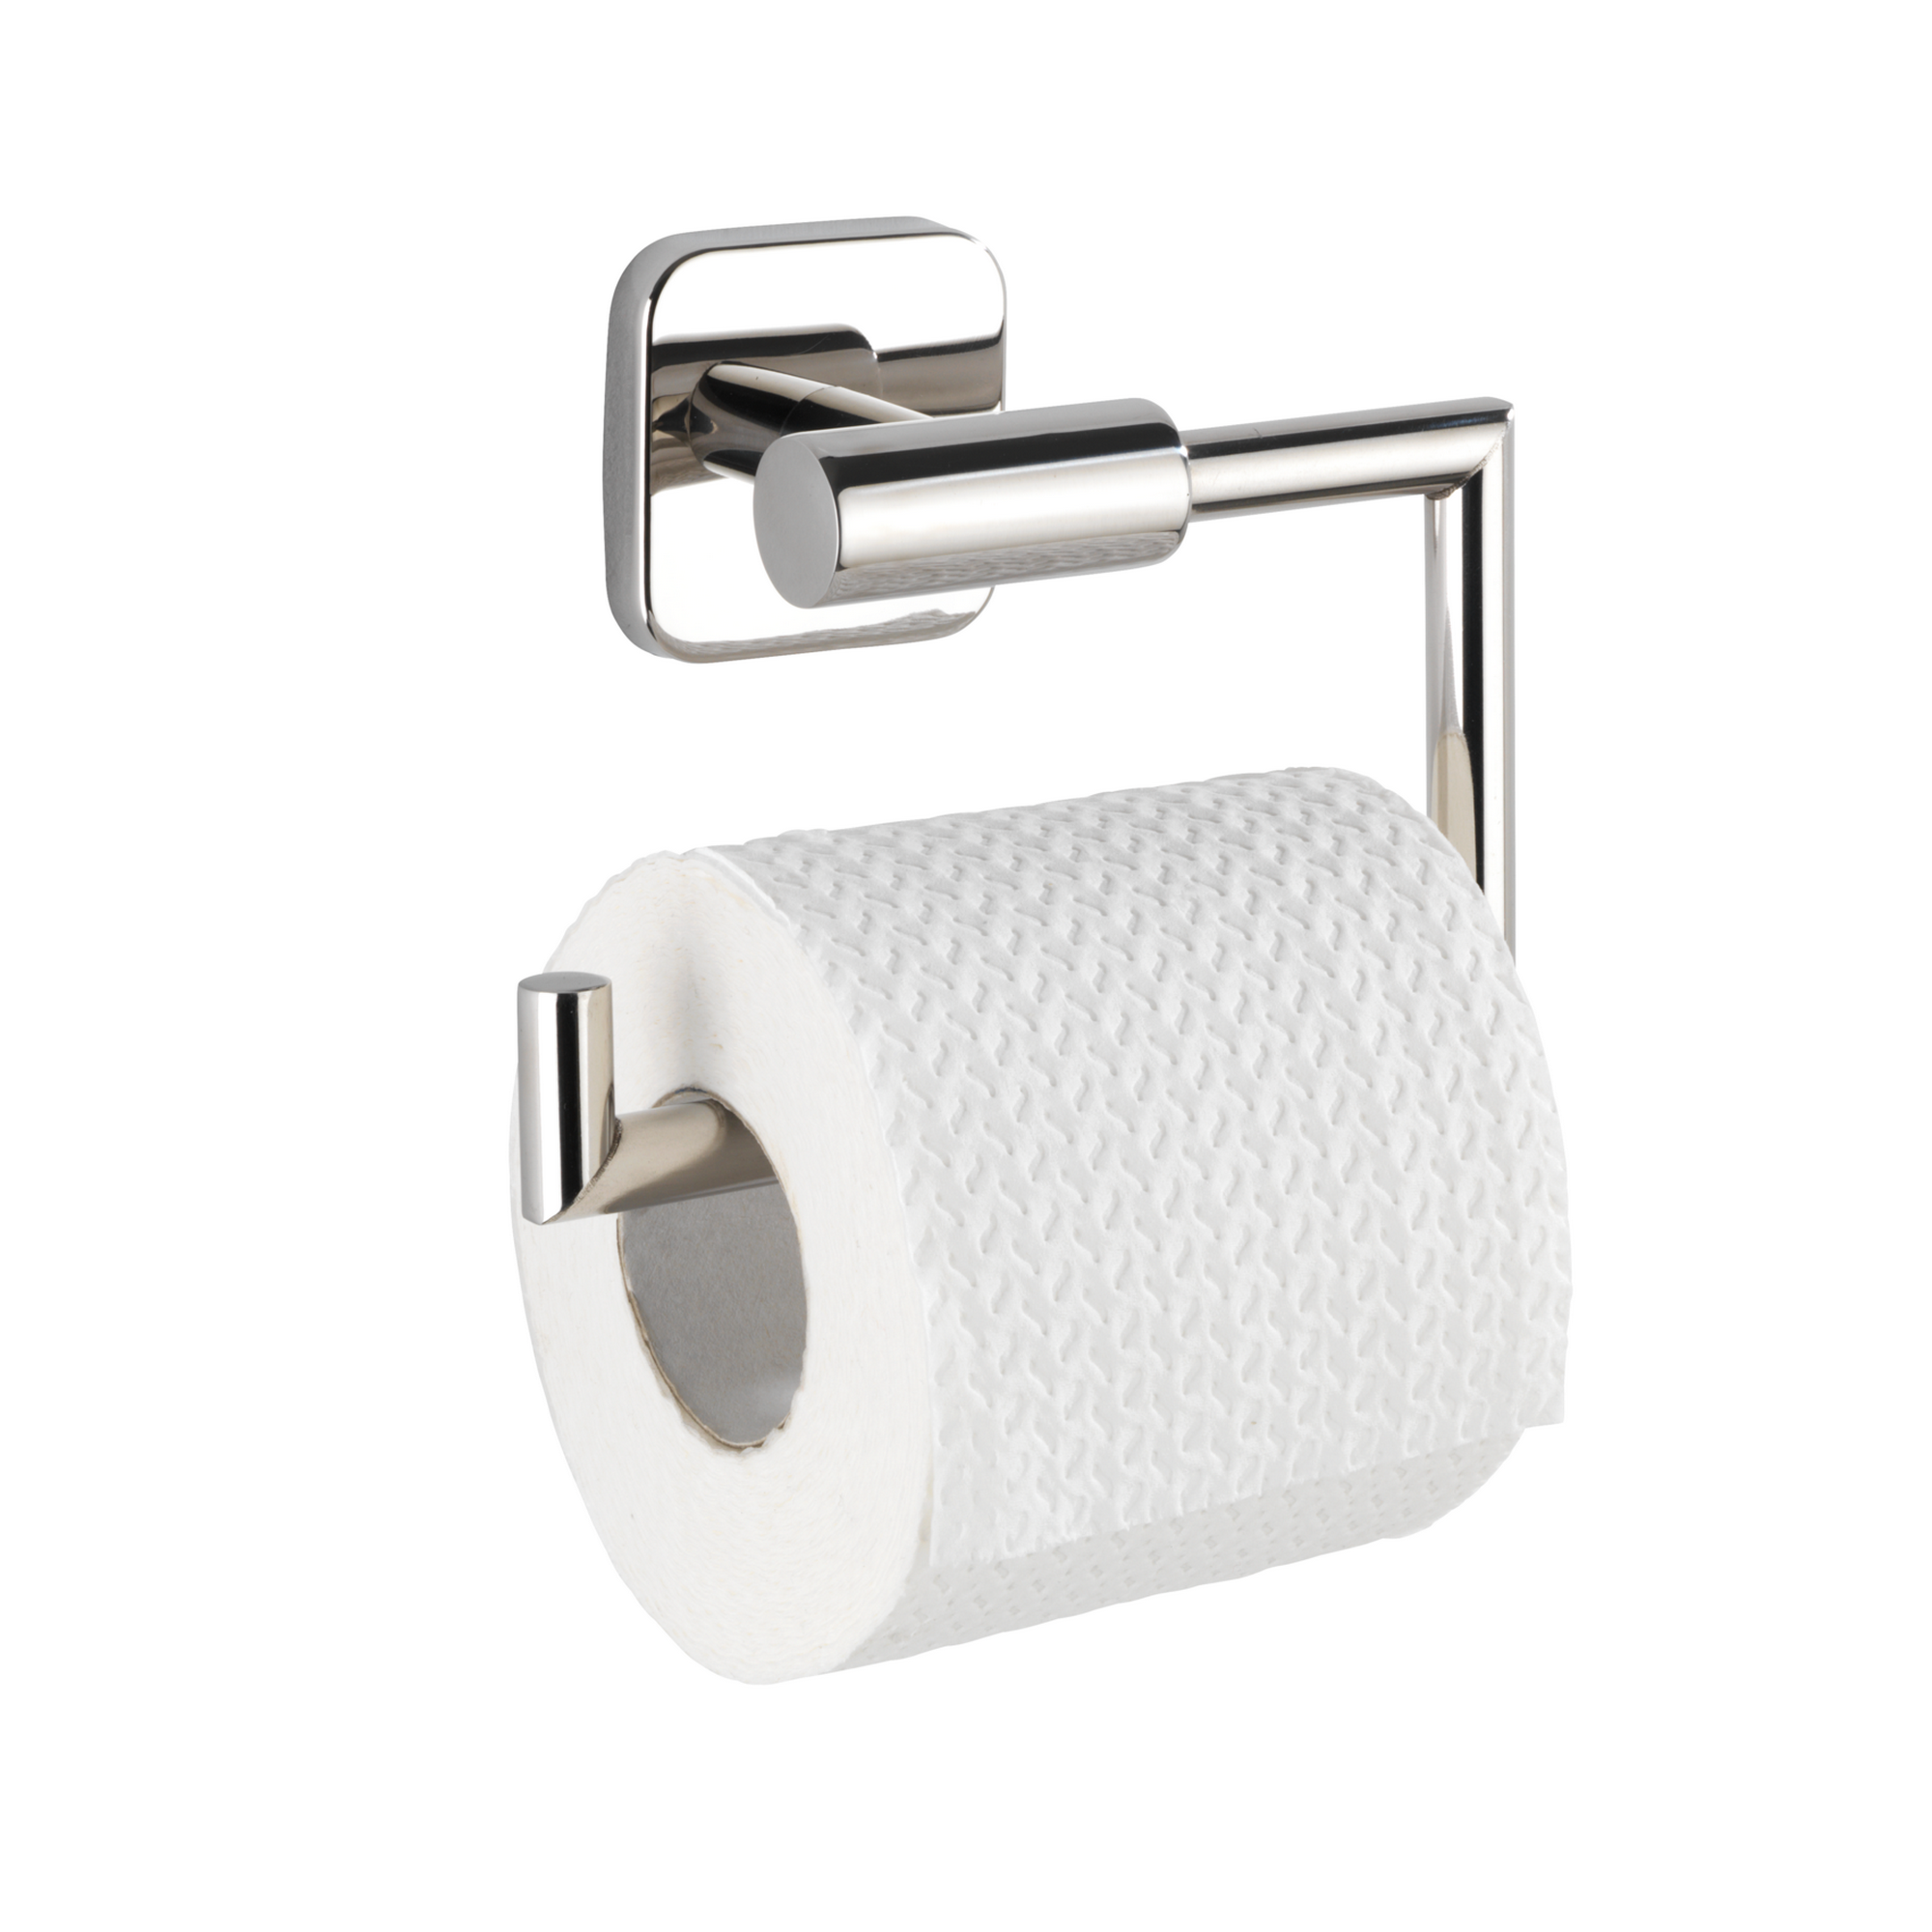 Toilettenpapierhalter 'Mezzano' Edelstahl rostfrei, glänzend + product picture